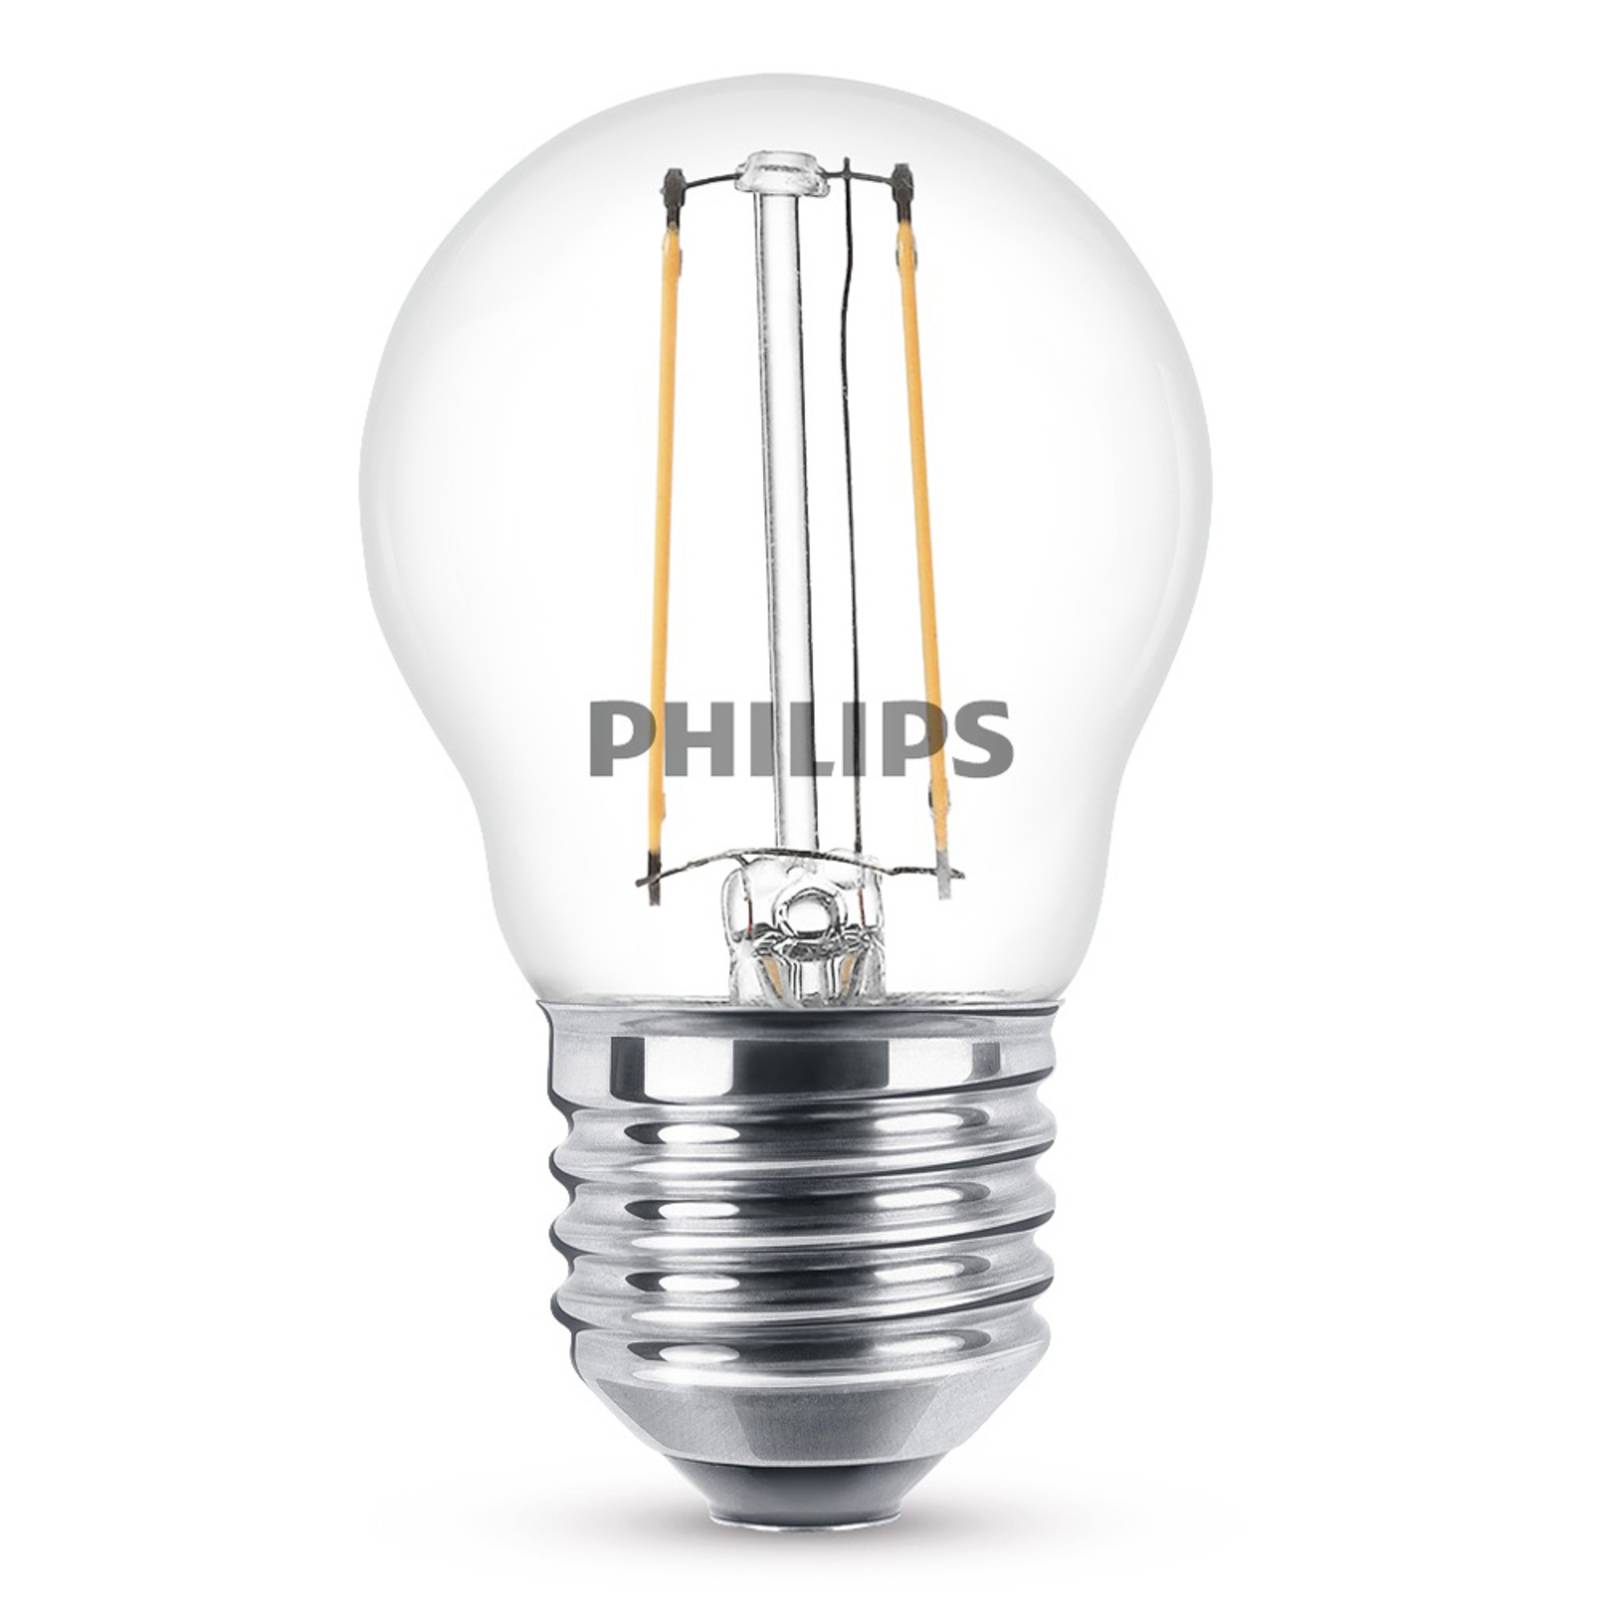 Philips Philips E27 2W 827 LED žárovka